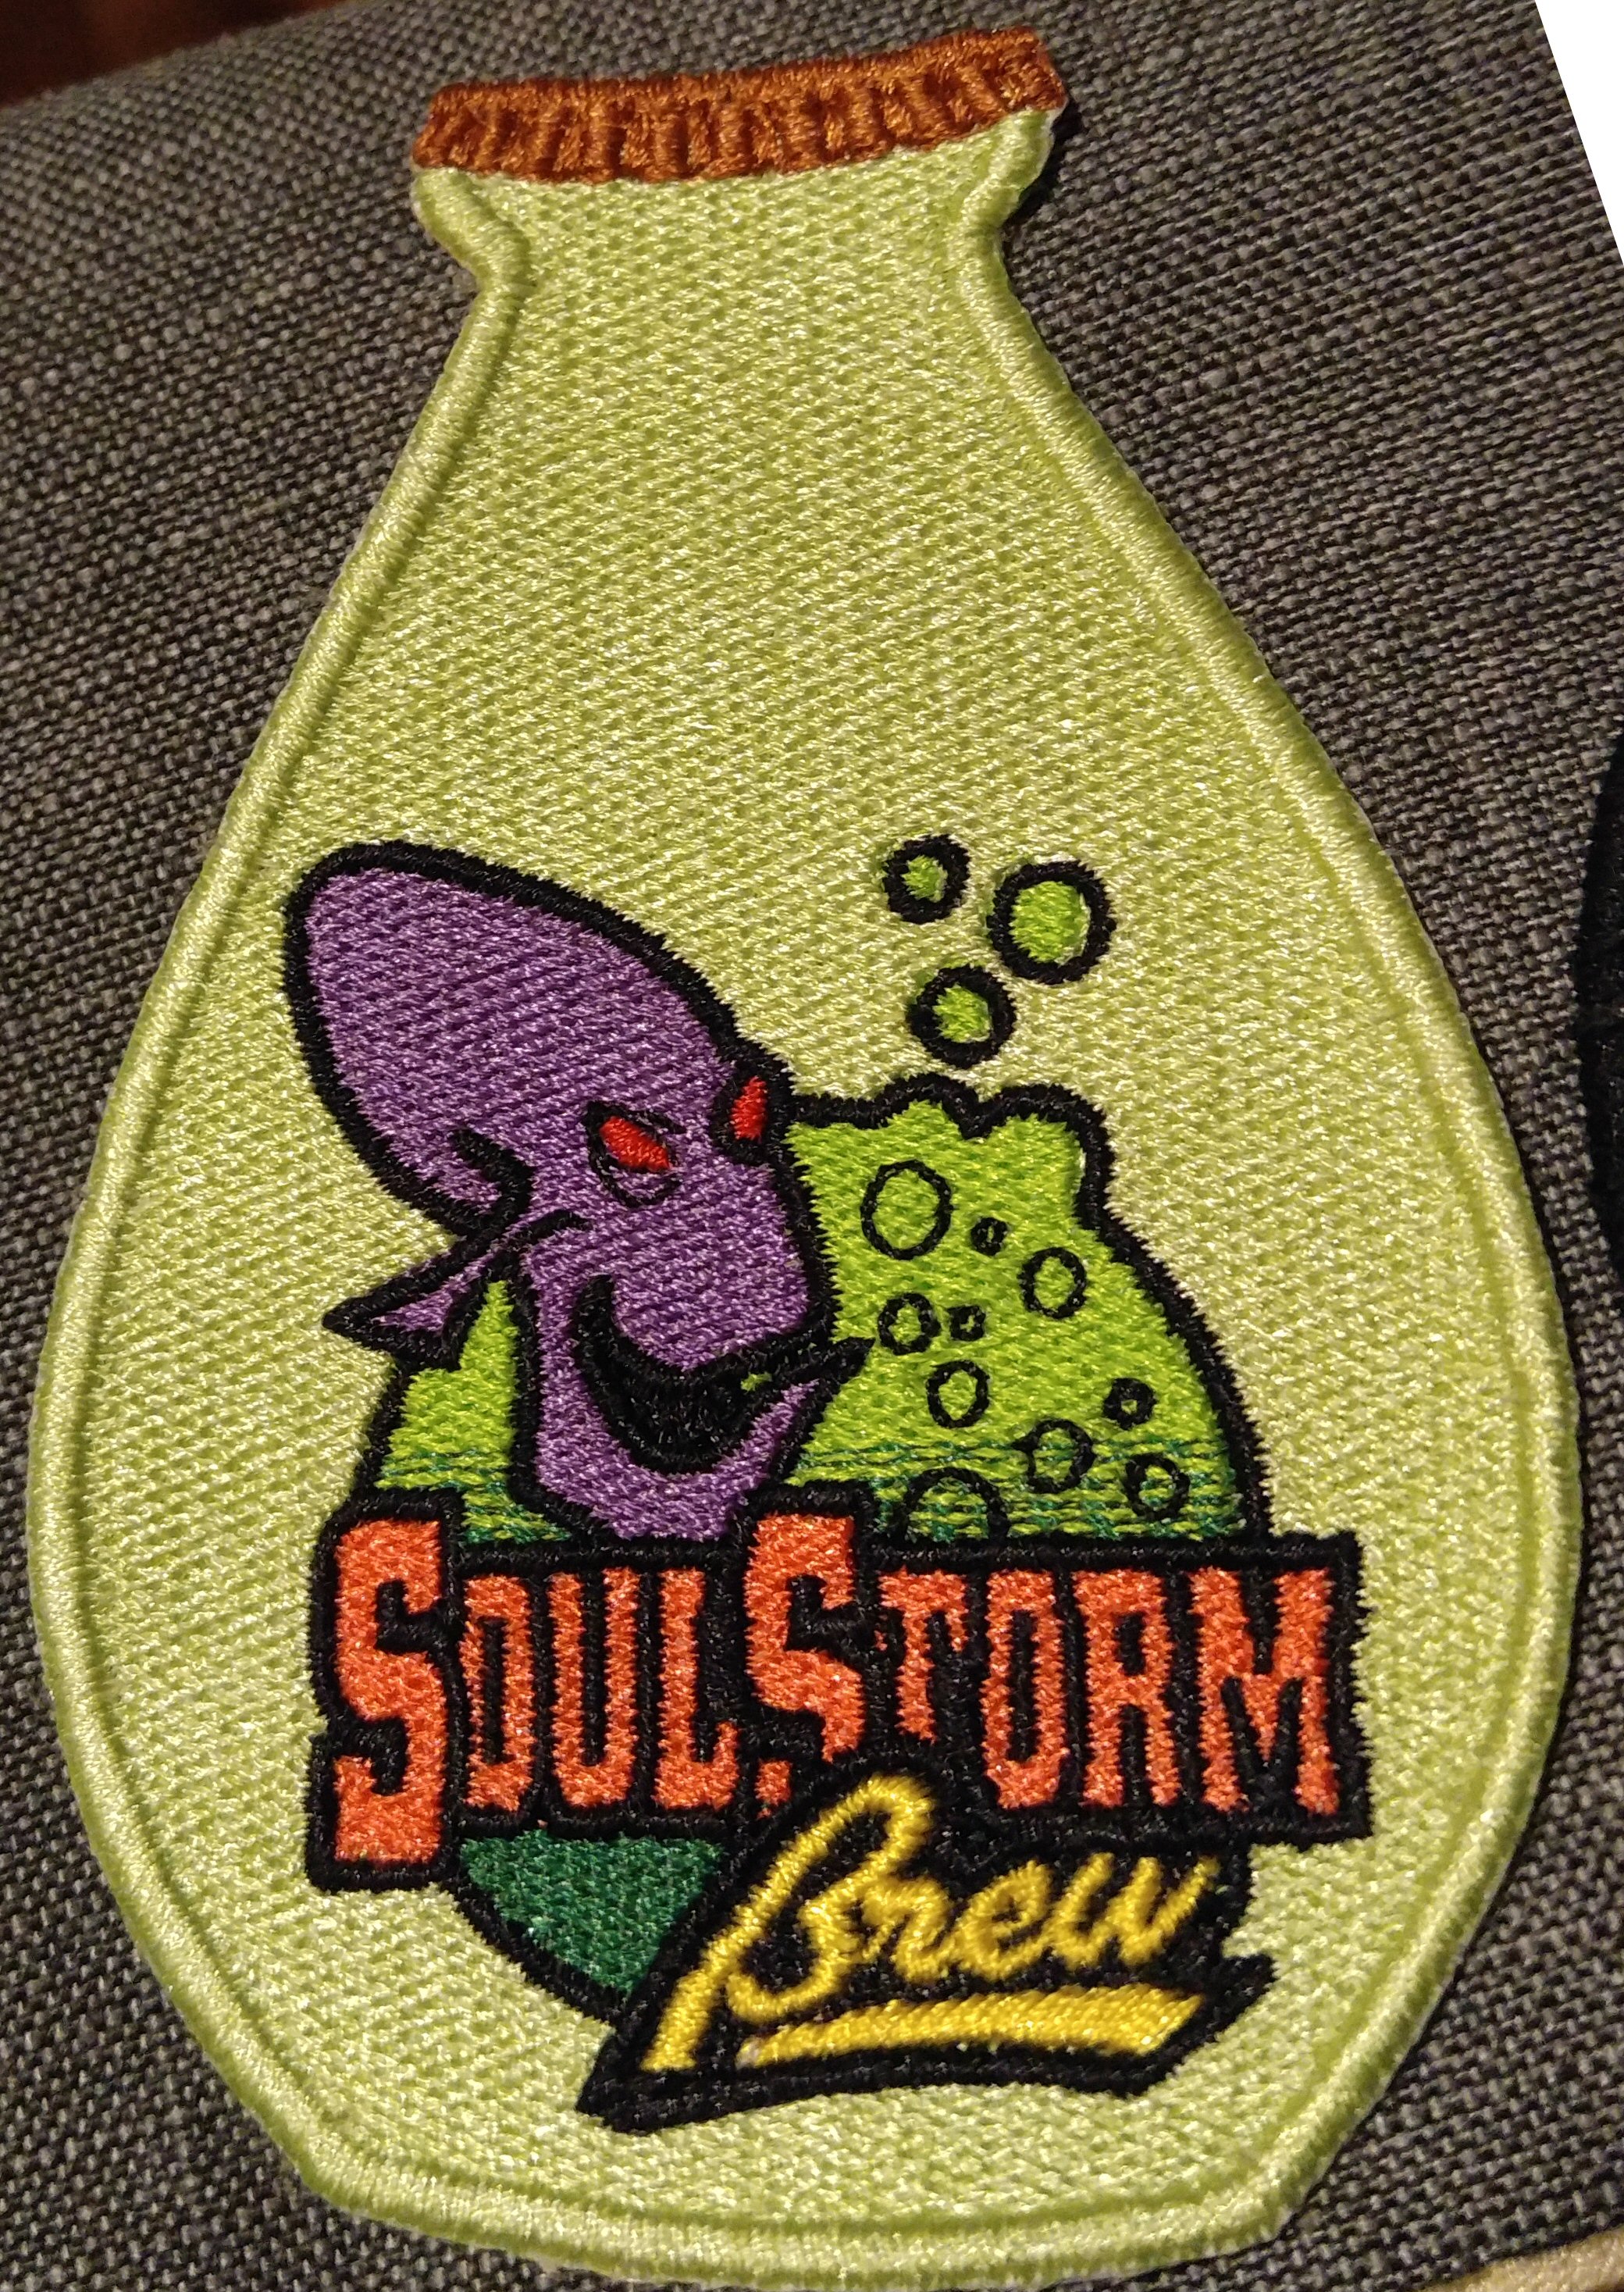 07-soulstorm brew patch